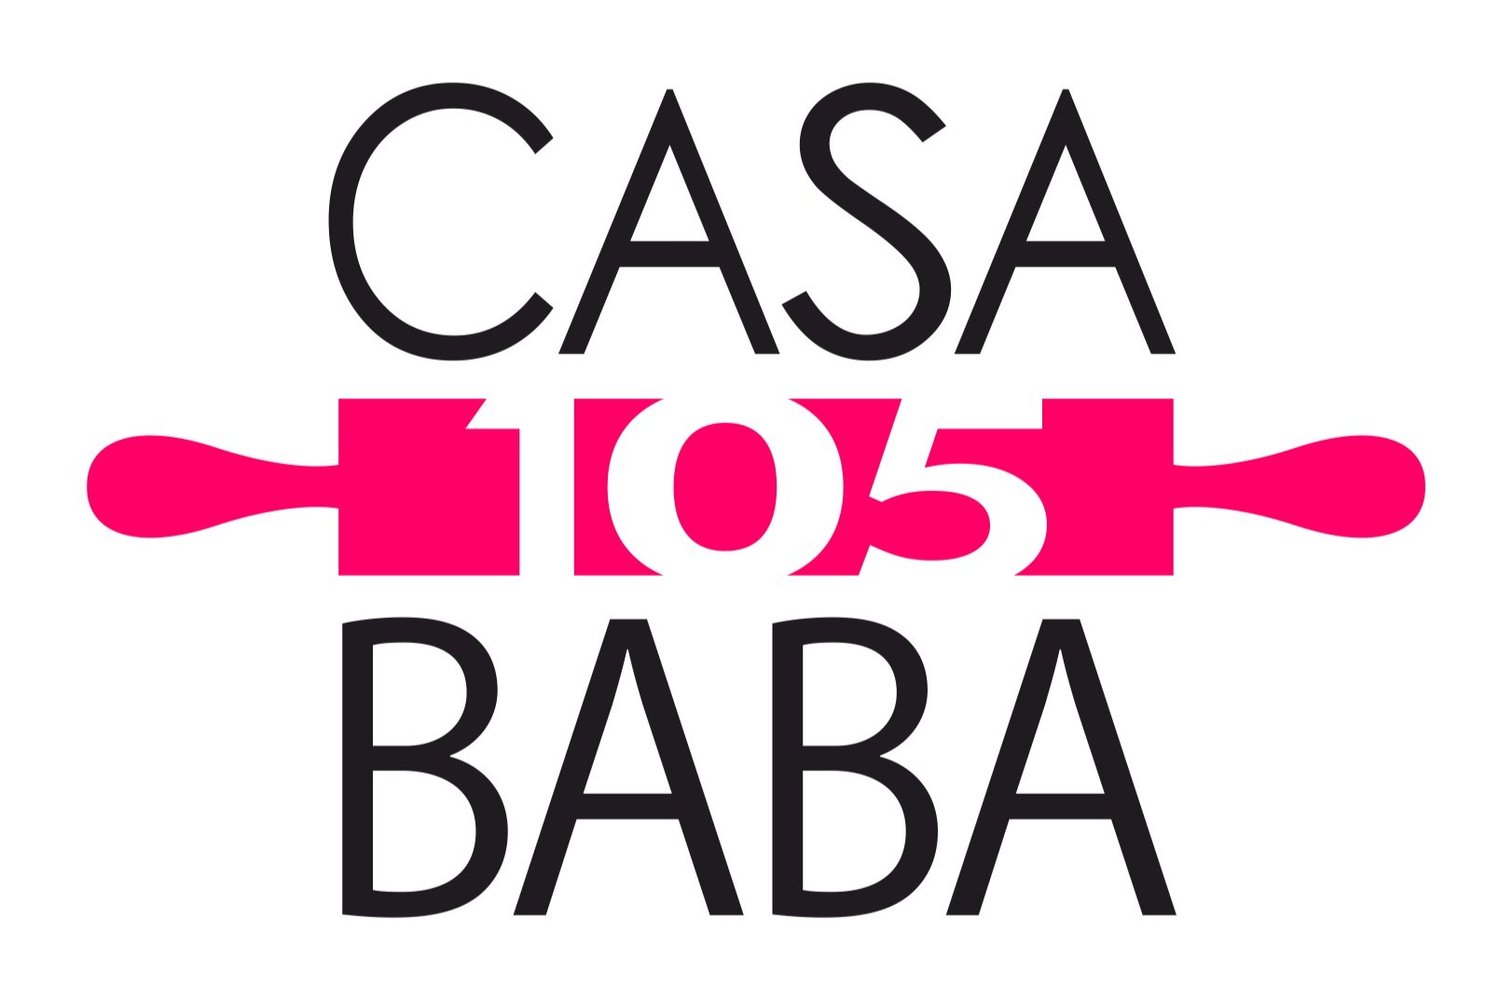 CasaBABA105